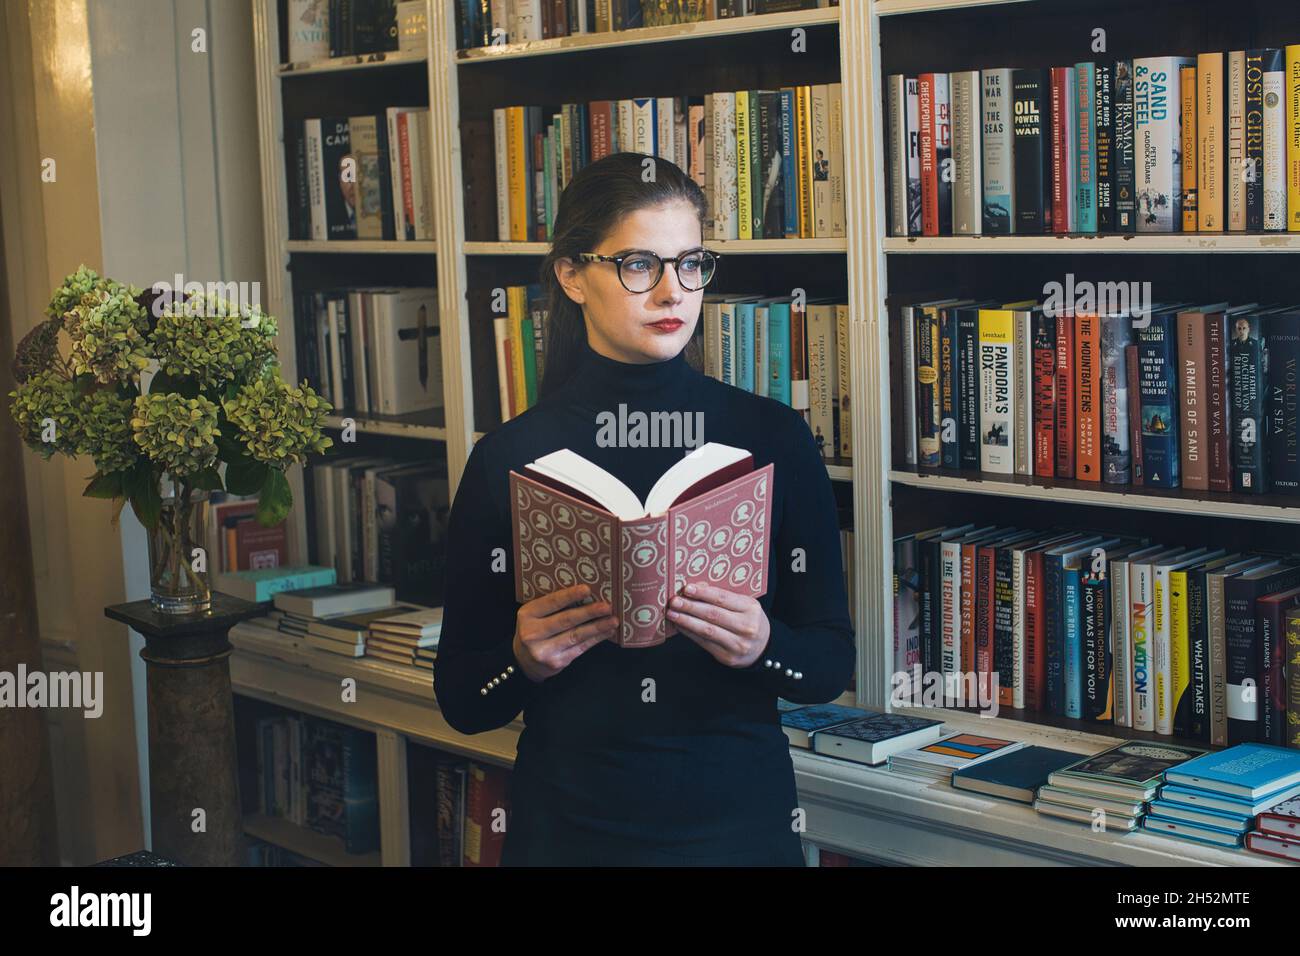 GRAN BRETAGNA / Londra / librerie / bella donna che legge un libro in una libreria. Foto Stock